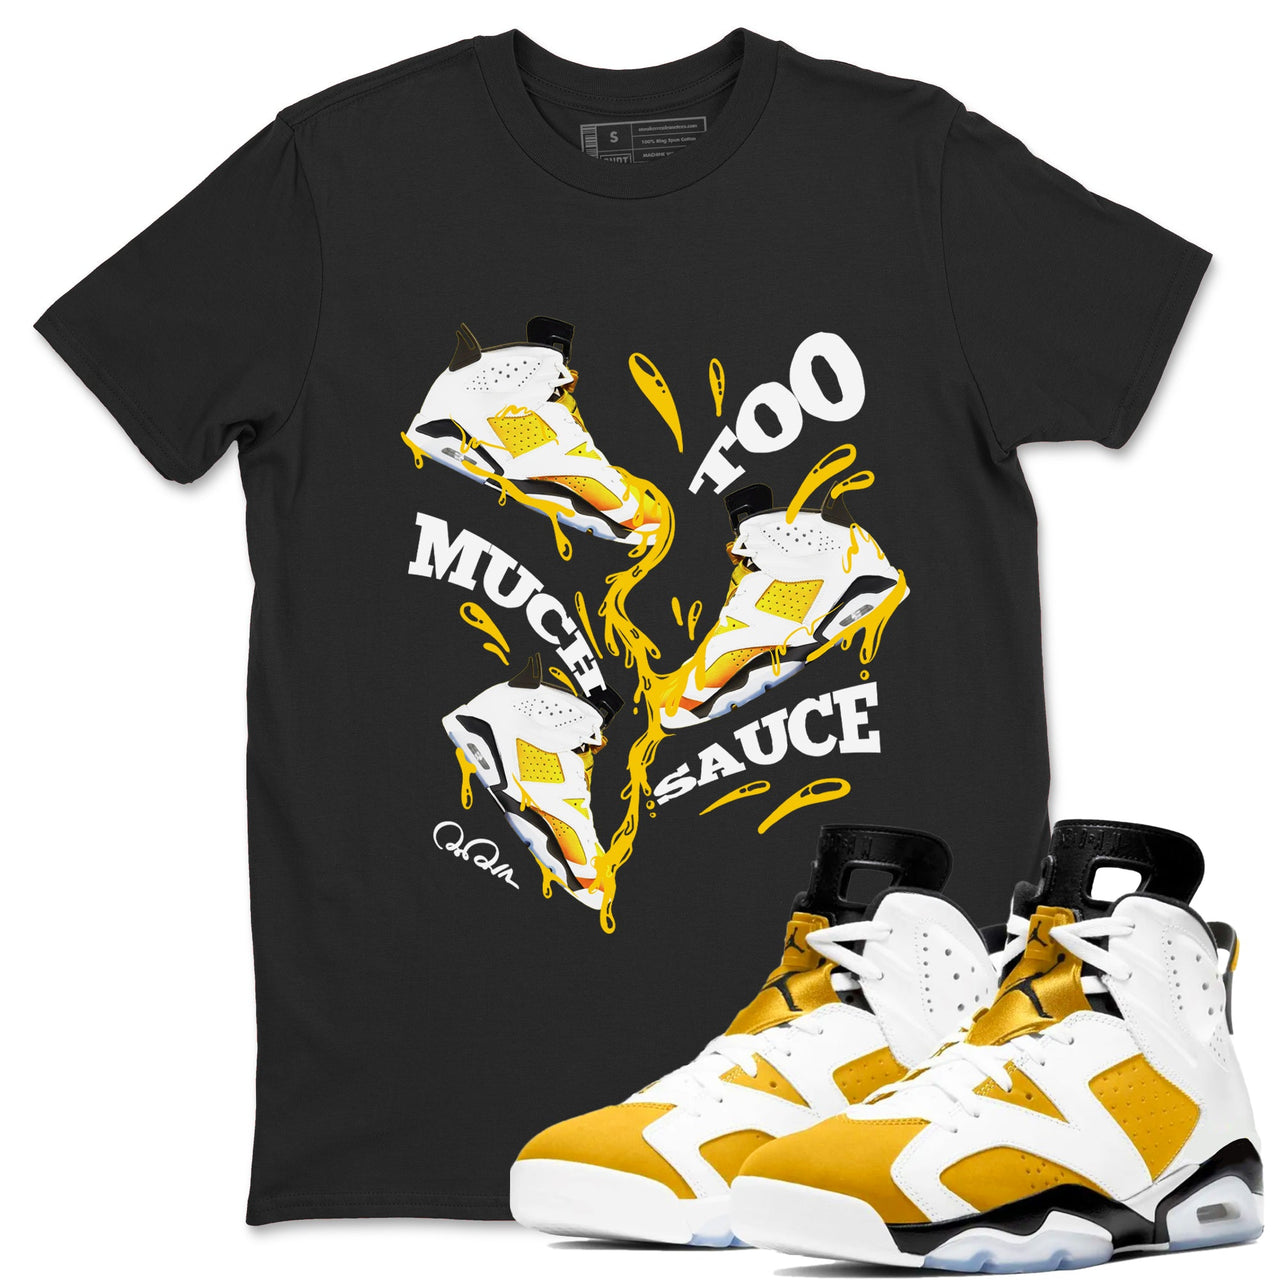 6s Yellow Ochre shirt to match jordans Too Much Sauce sneaker tees Air Jordan 6 Yellow Ochre SNRT Sneaker Release Tees Unisex Gold 1 T-Shirt